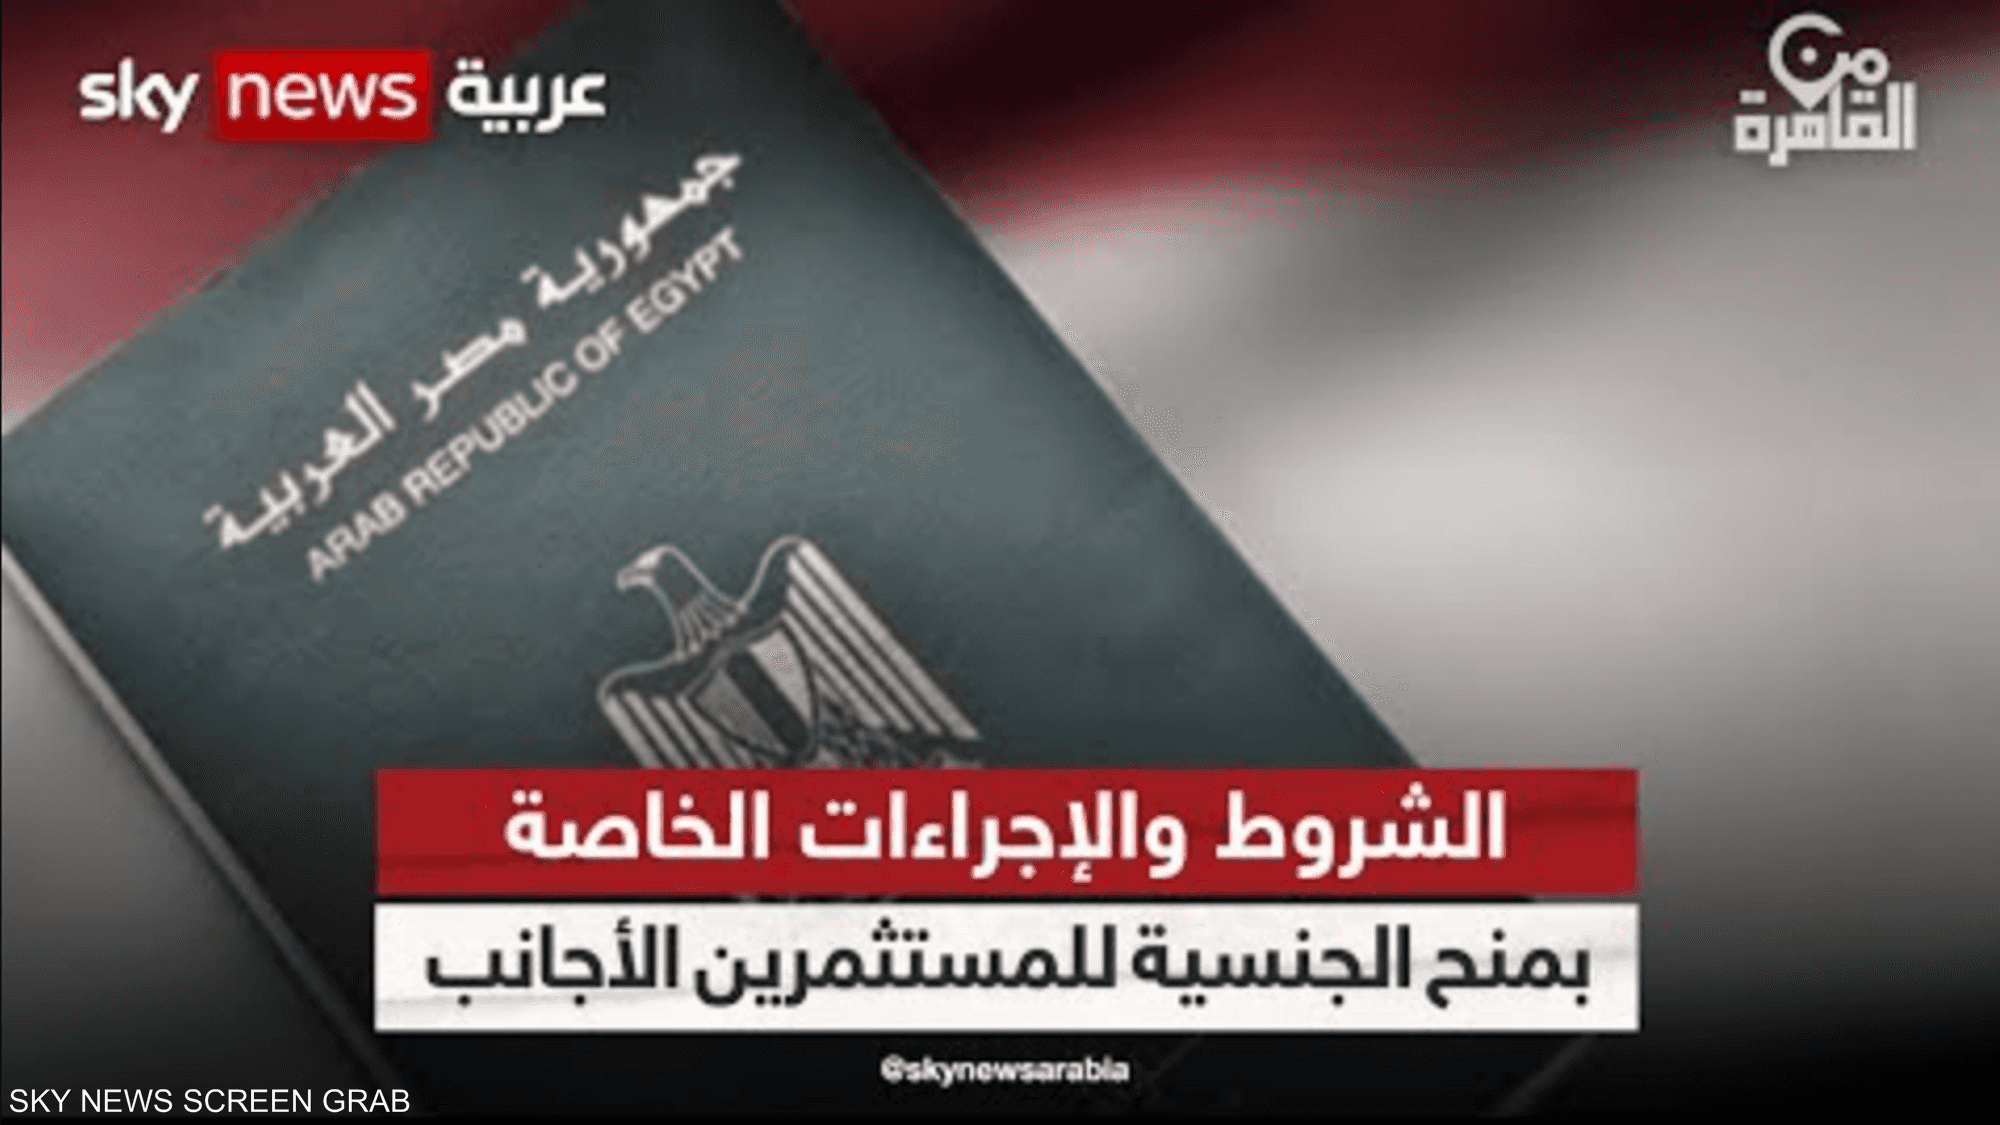 الدولار يفتح الباب أمام الأجانب للحصول على الجنسية المصرية